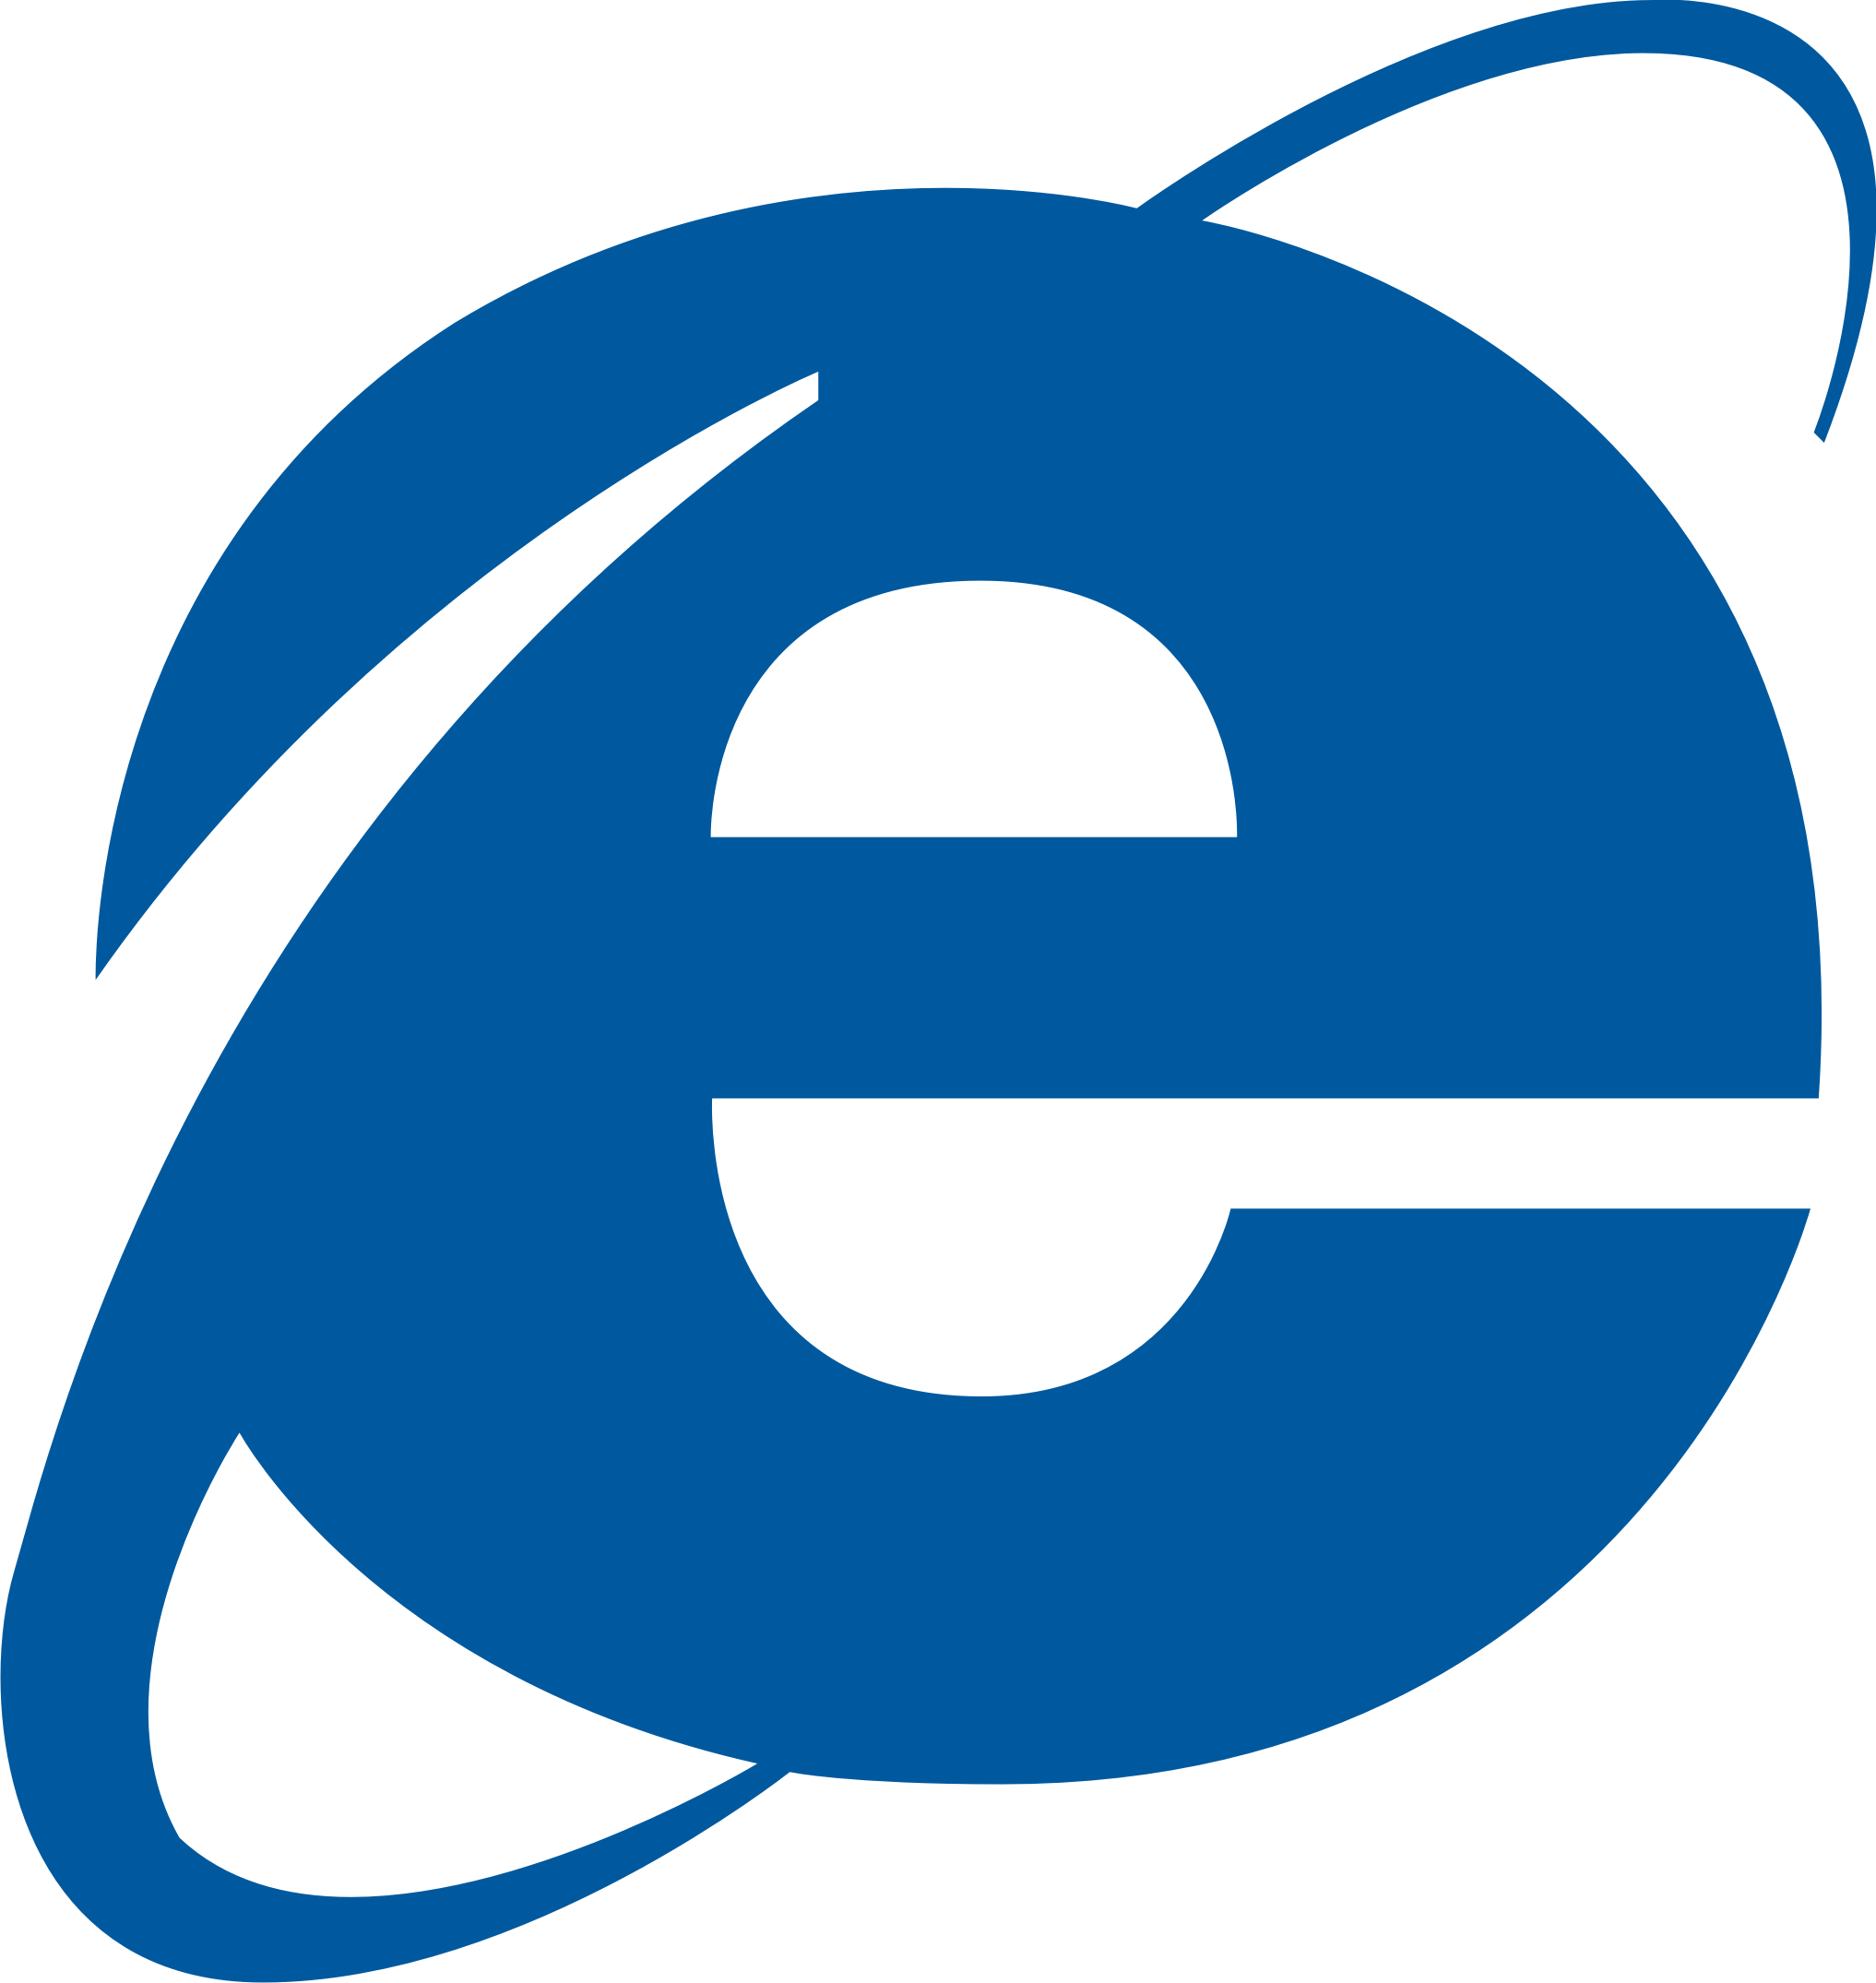 IE7 Logo - Internet Explorer logo PNG image free download